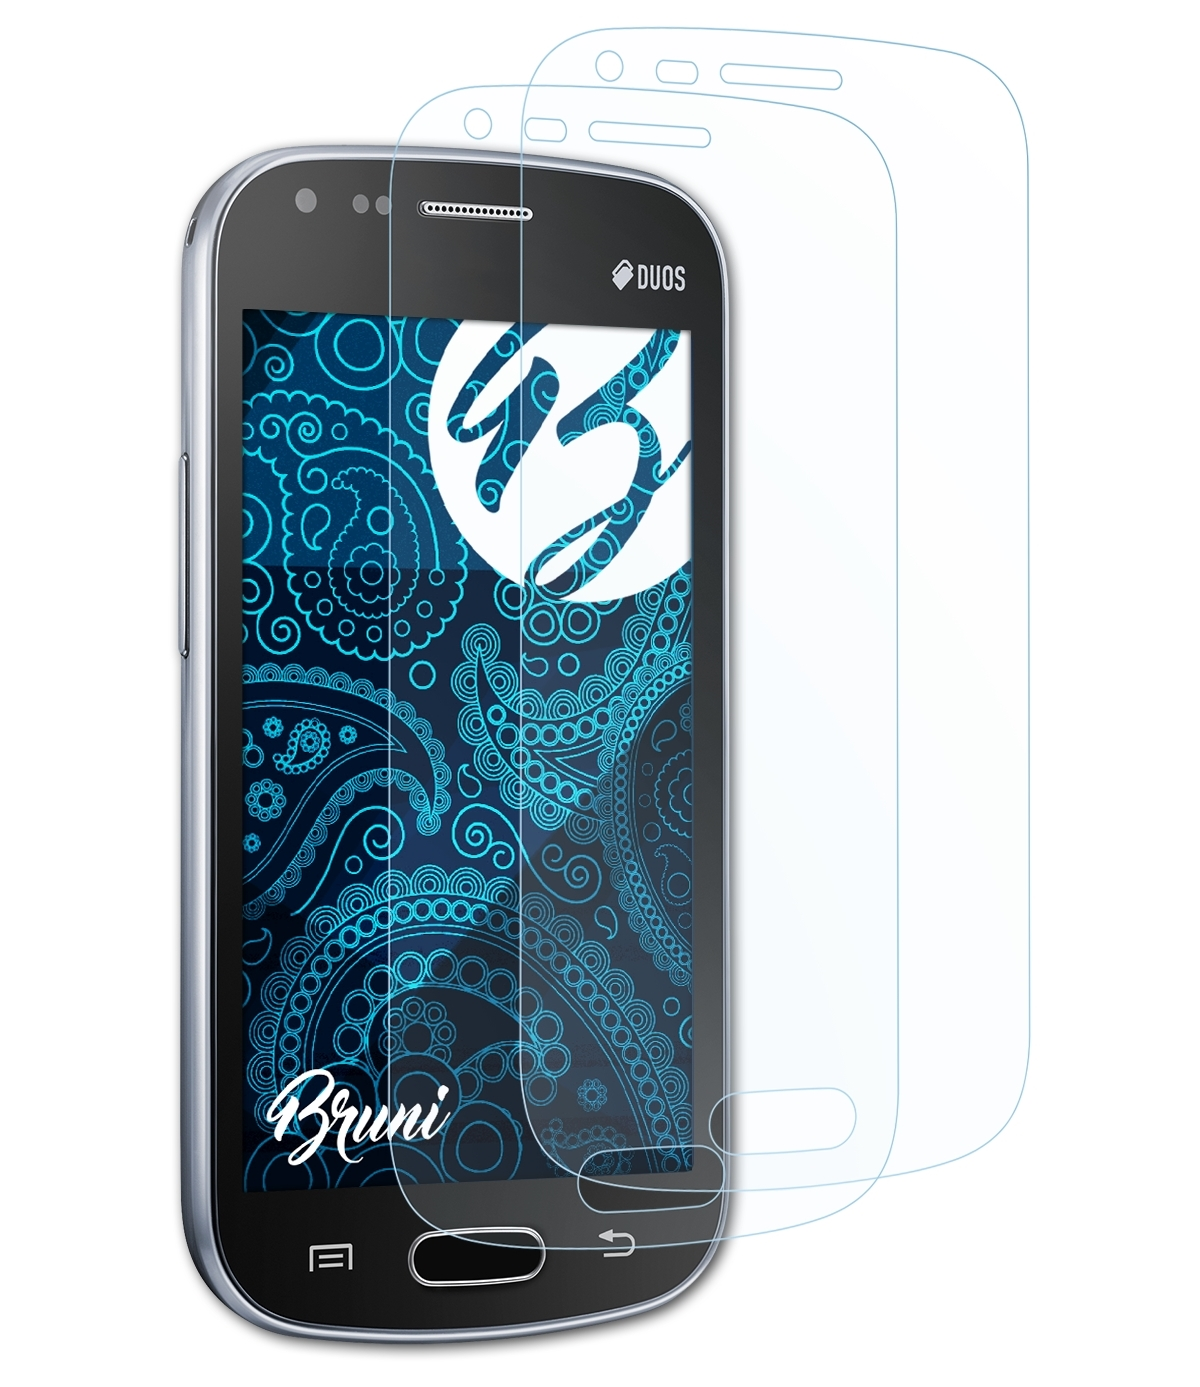 BRUNI 2x Basics-Clear 2) Samsung S Galaxy Schutzfolie(für Duos